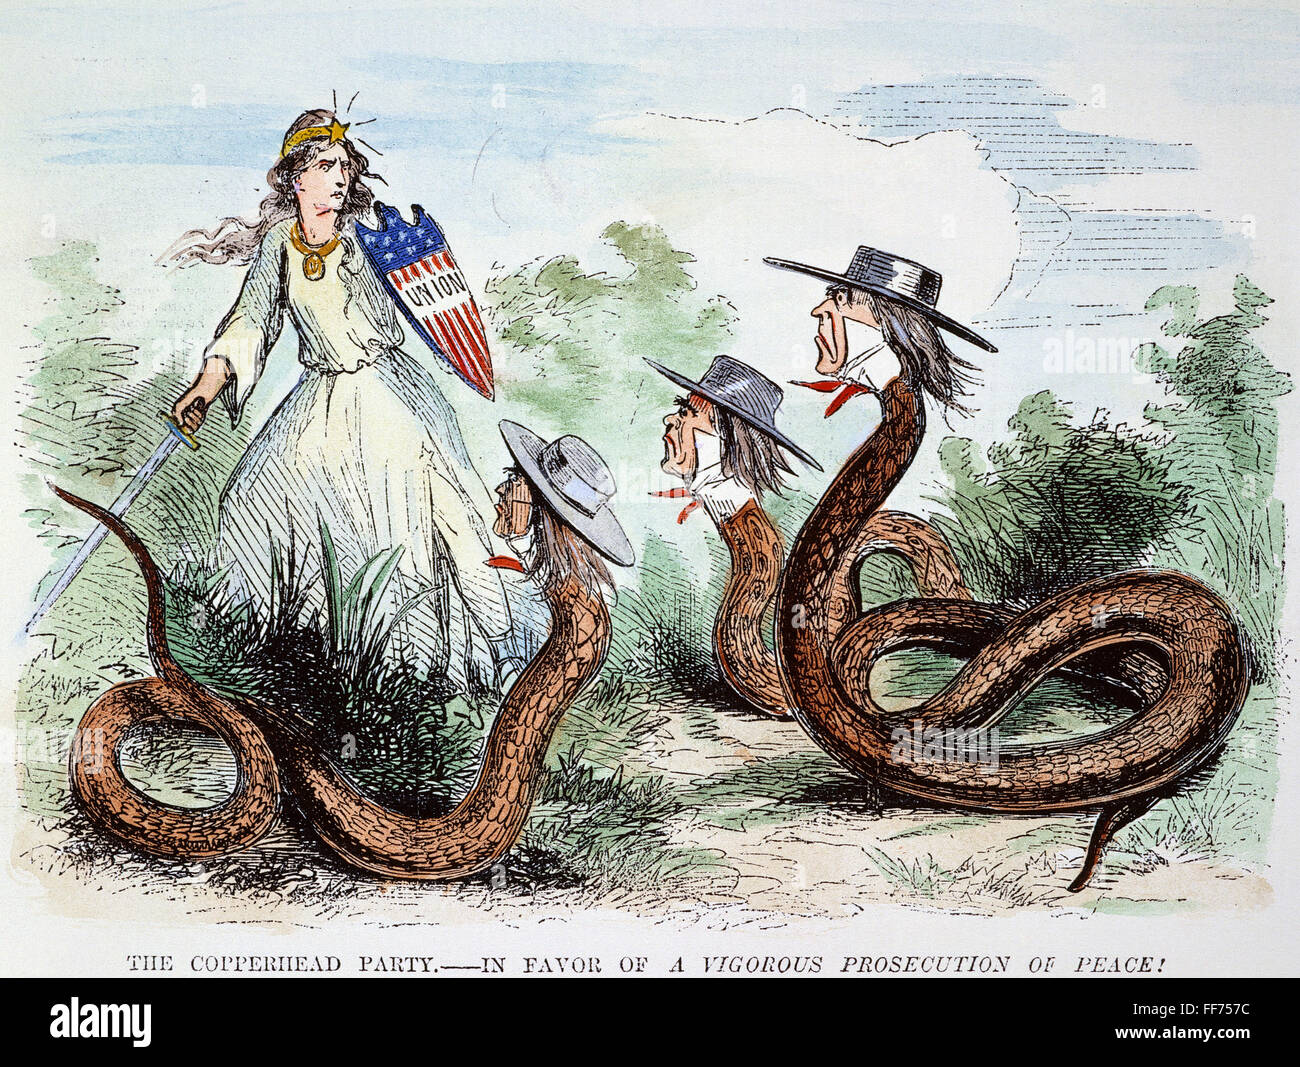 La Midwest COPPERHEADS, 1863. /NNorthern fumetto americano del 1863 mostra l'Unione minacciato da serpenti politico (Copperheads) indossando i cappelli del Midwest congressisti democratici. Foto Stock